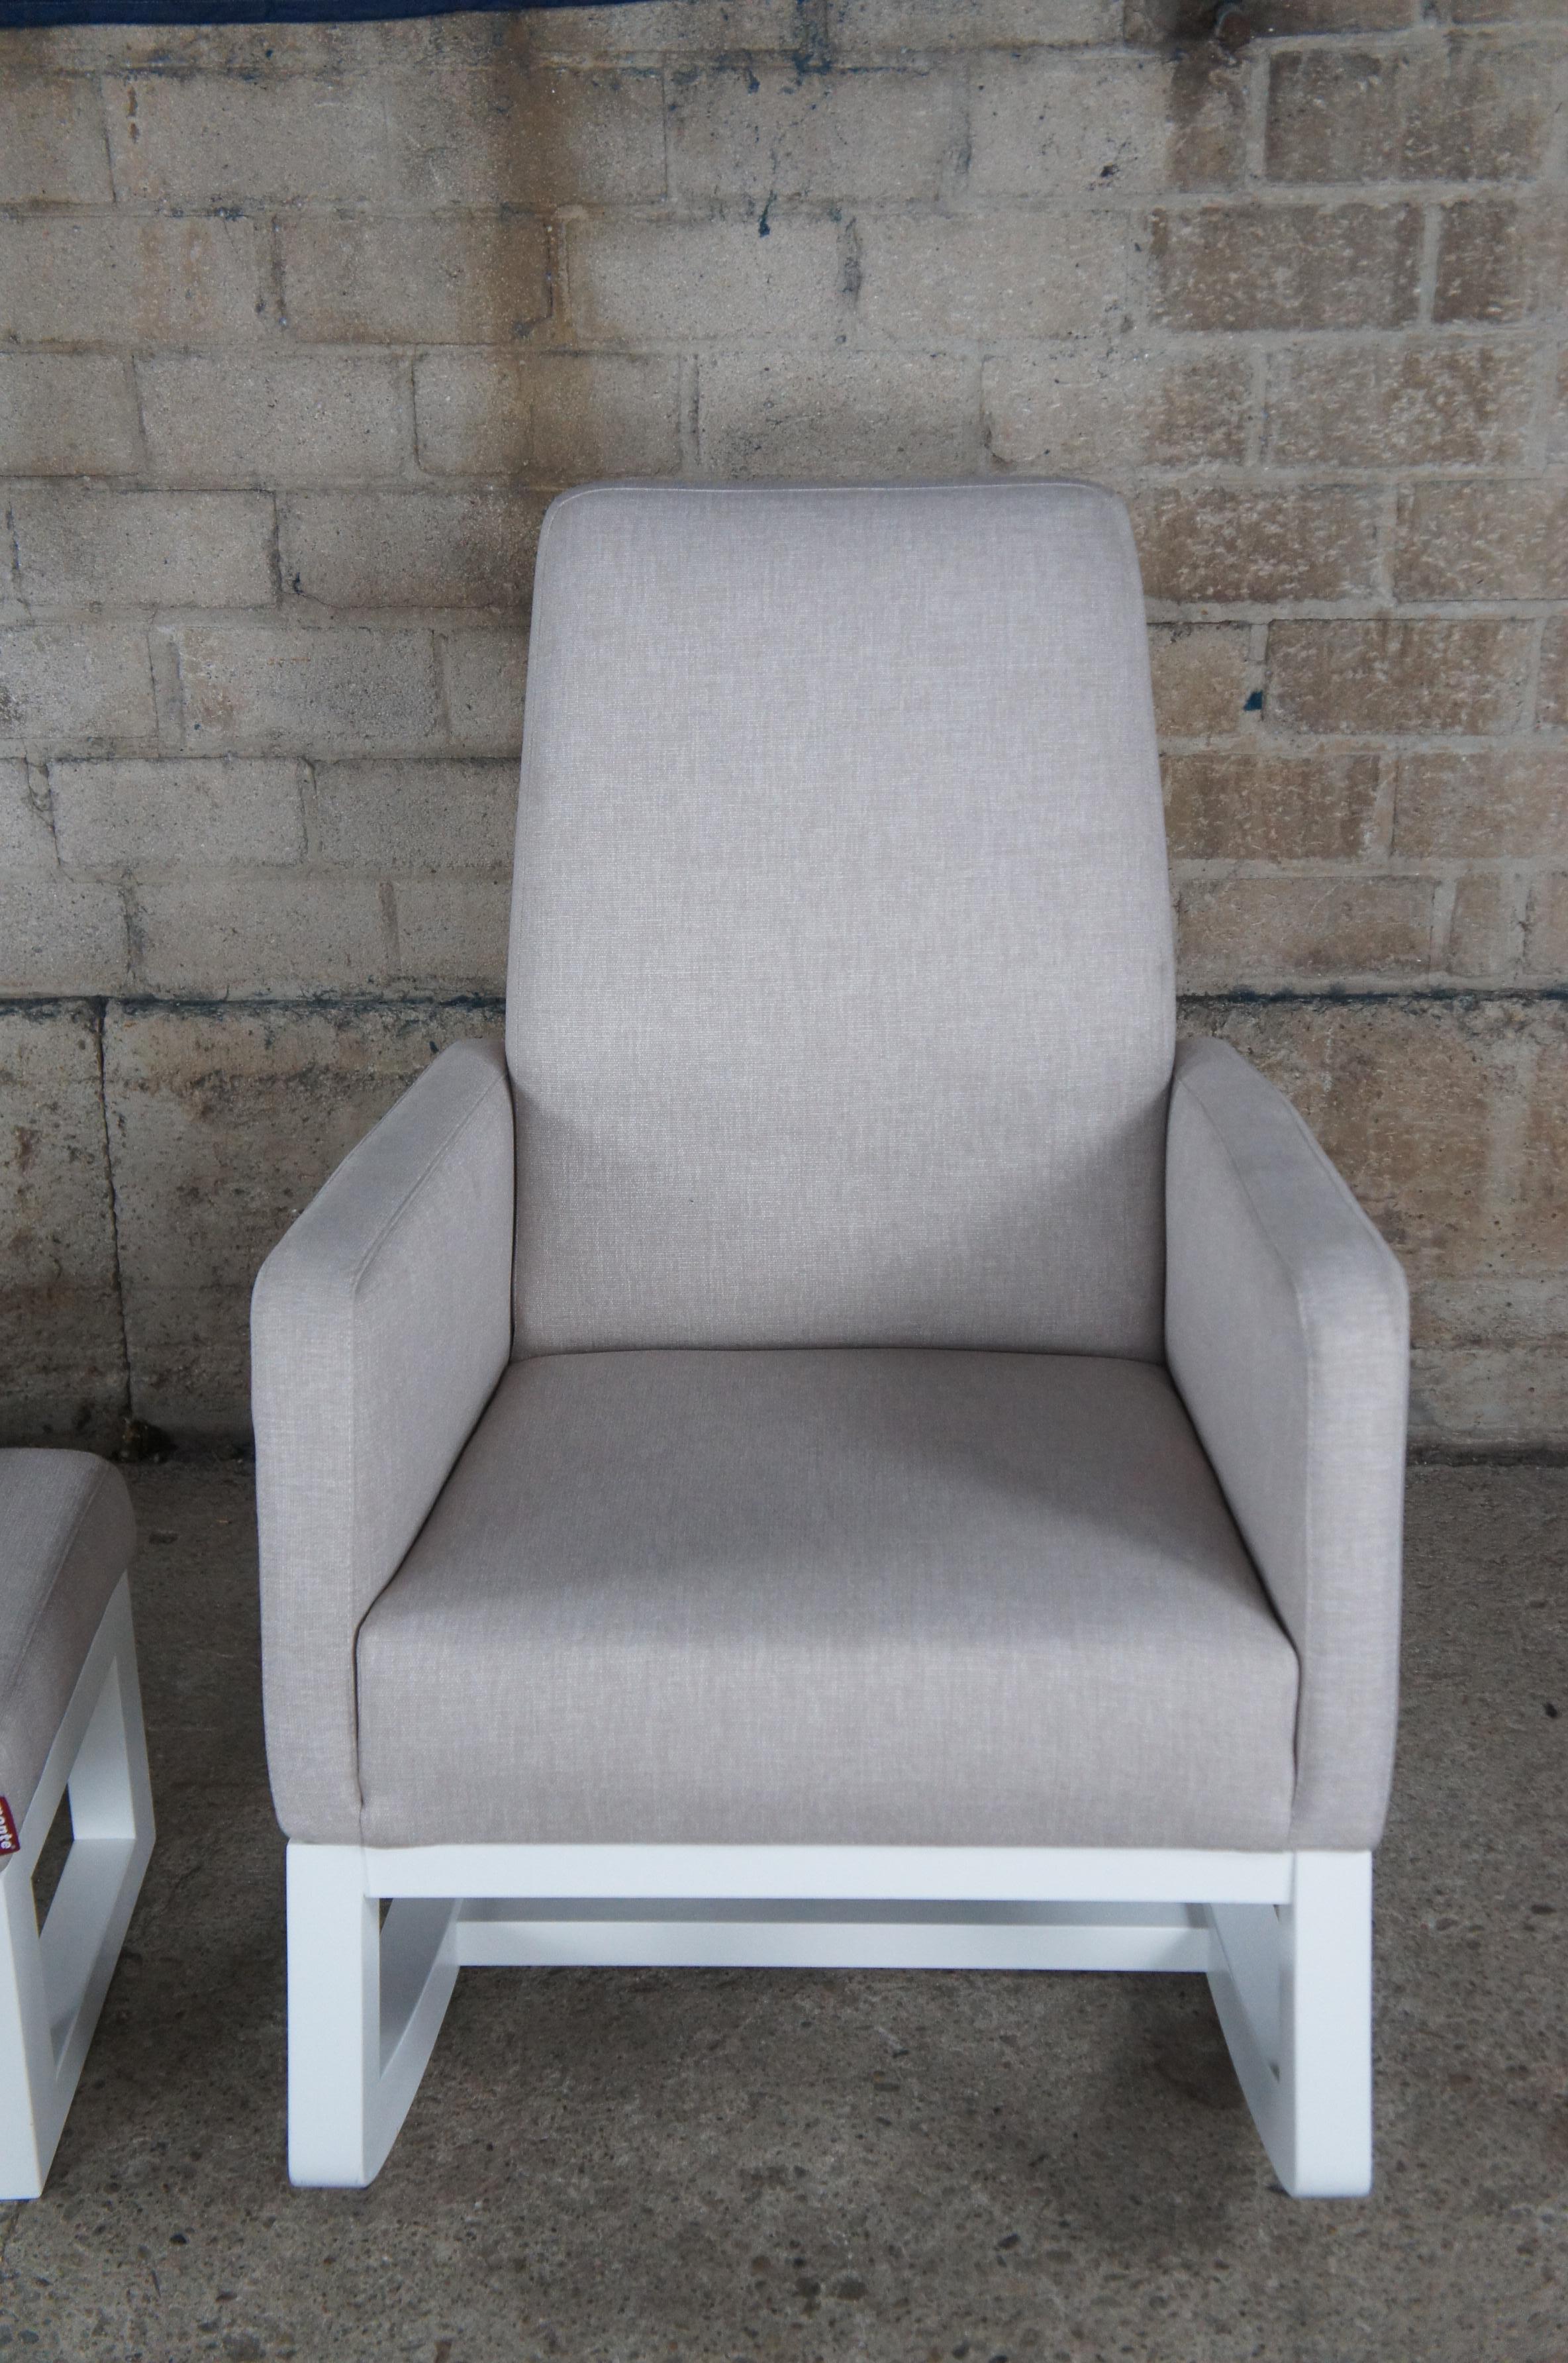 Monte Scandanavian Modern Joya Nursery Rocker Rocking Chair & Ottoman In Good Condition For Sale In Dayton, OH